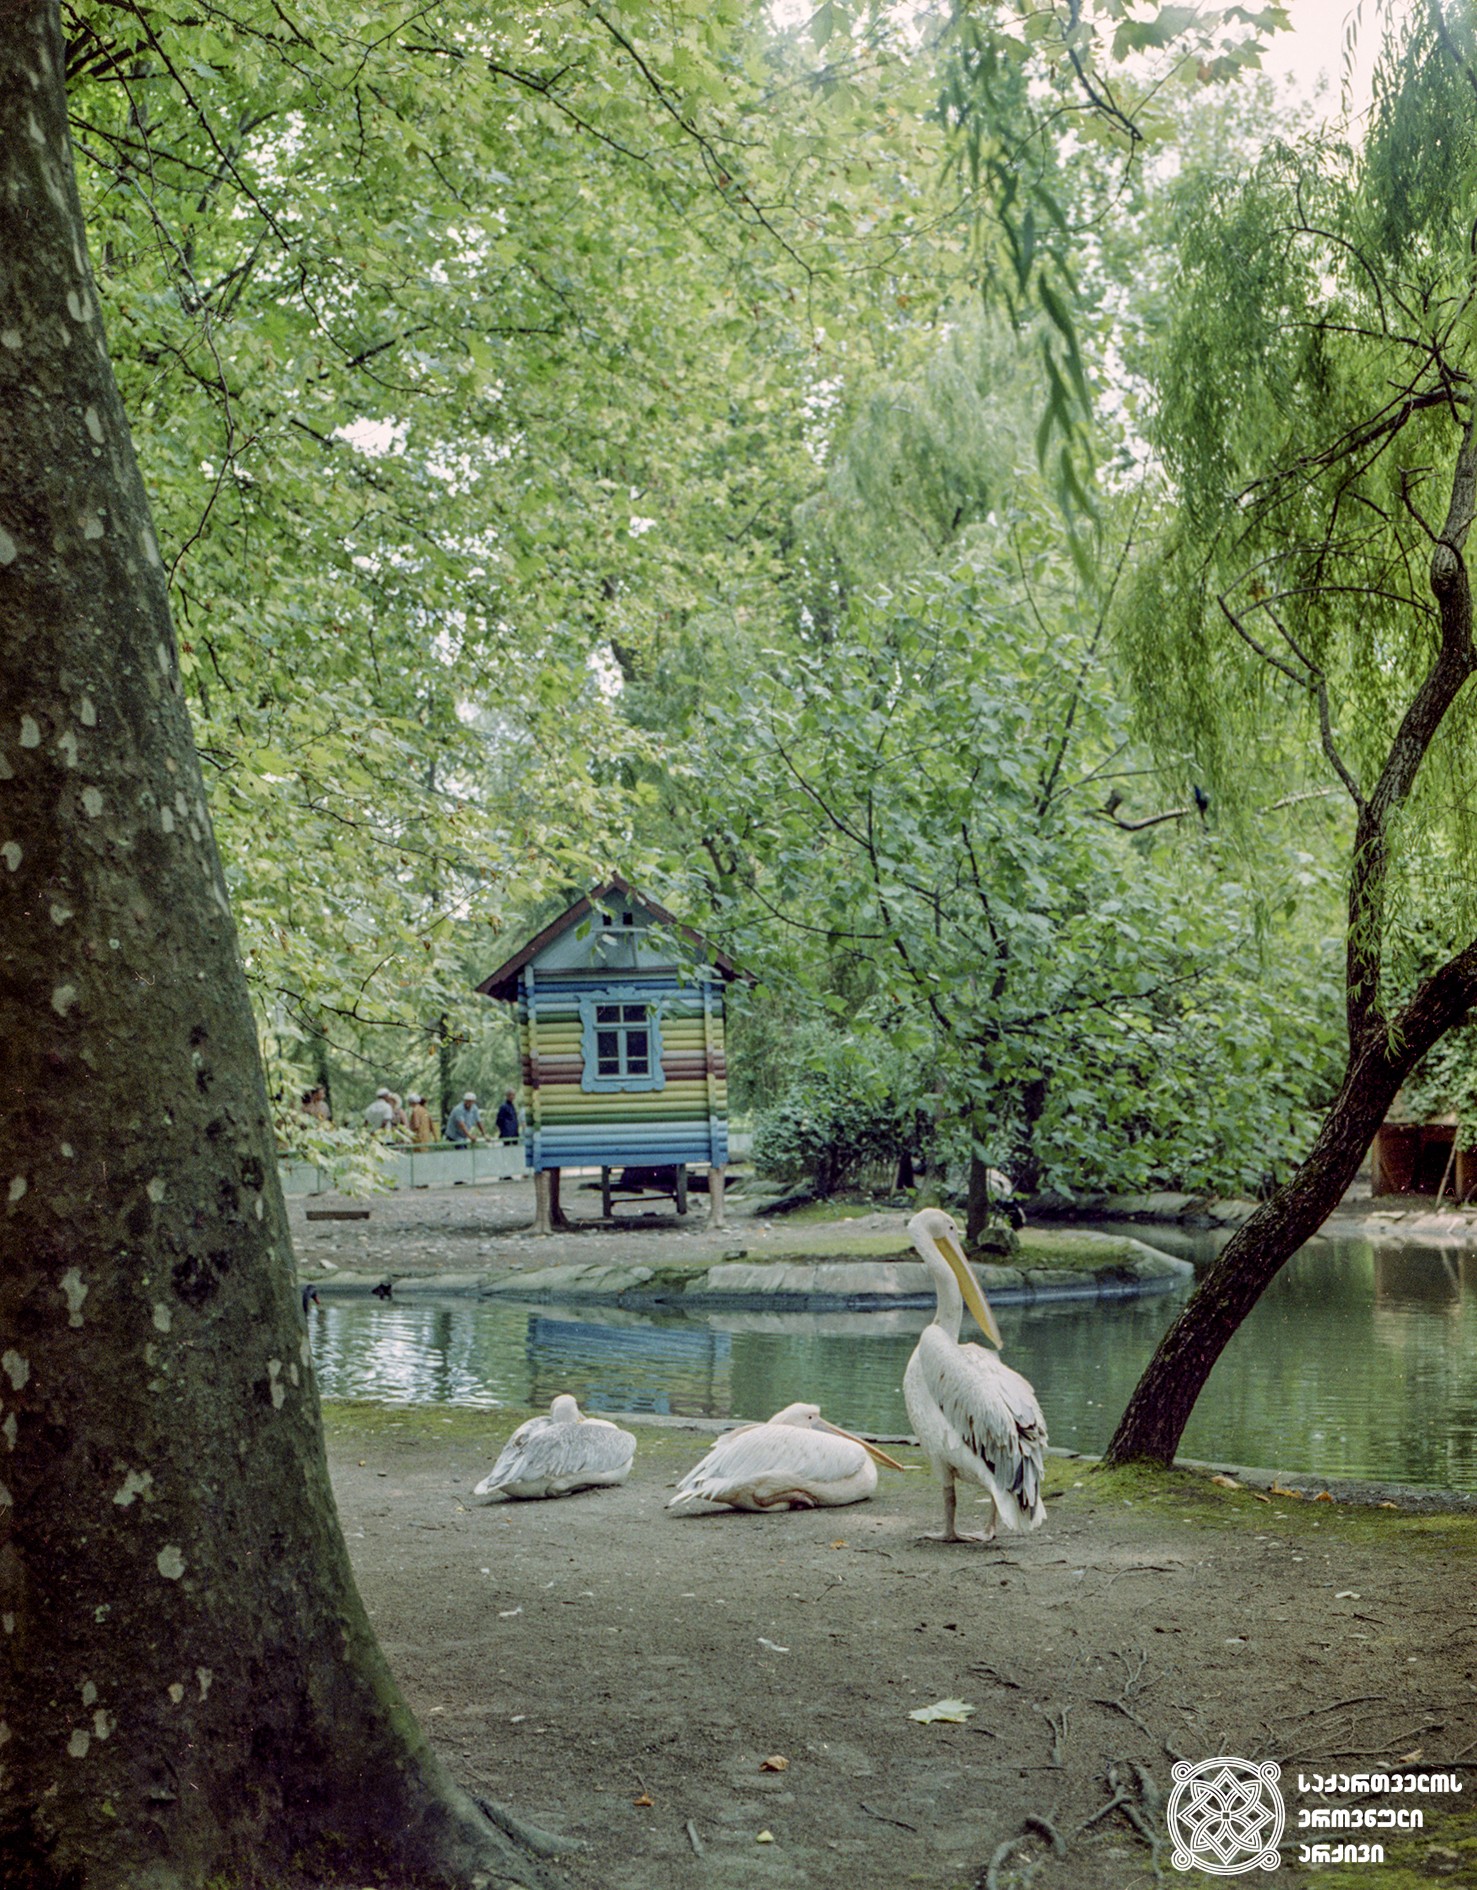 გაგრის პარკი, აფხაზეთი. 1973 წელი.
<br>
Gagra Park, Abkhazia. 1973.